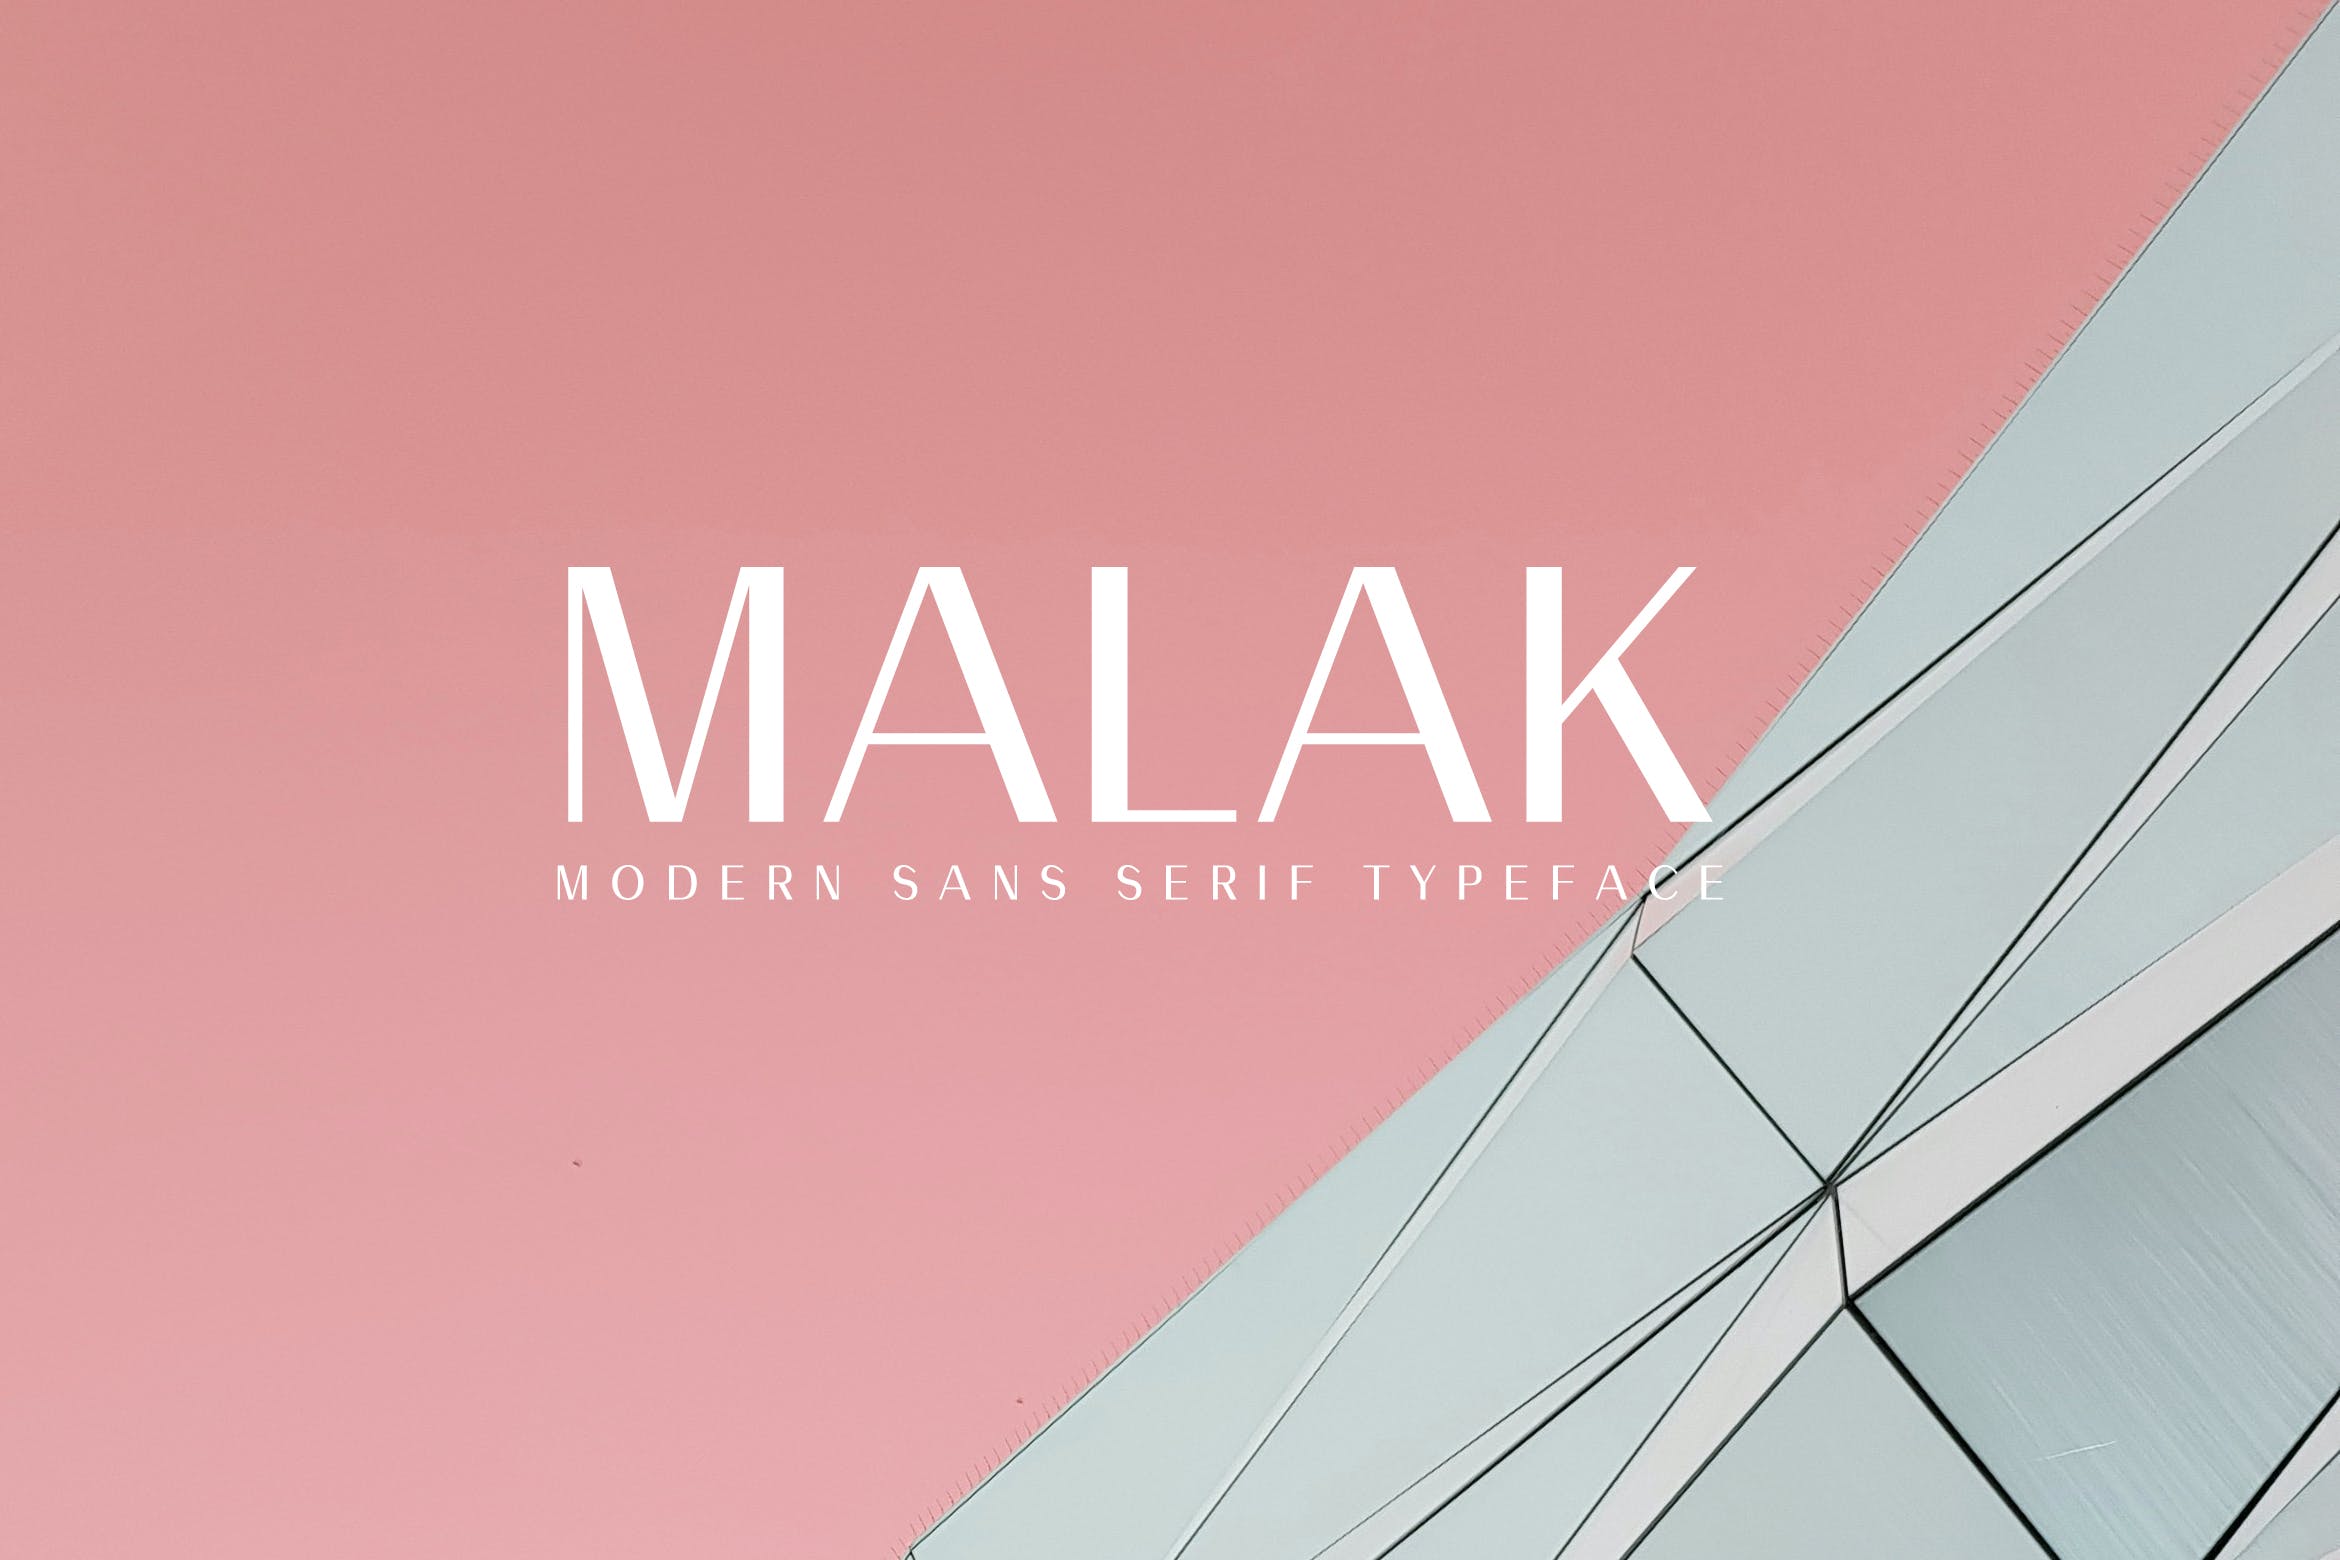 现代设计风格排版设计英文无衬线字体家族 Malak Sans Serif Font Family插图